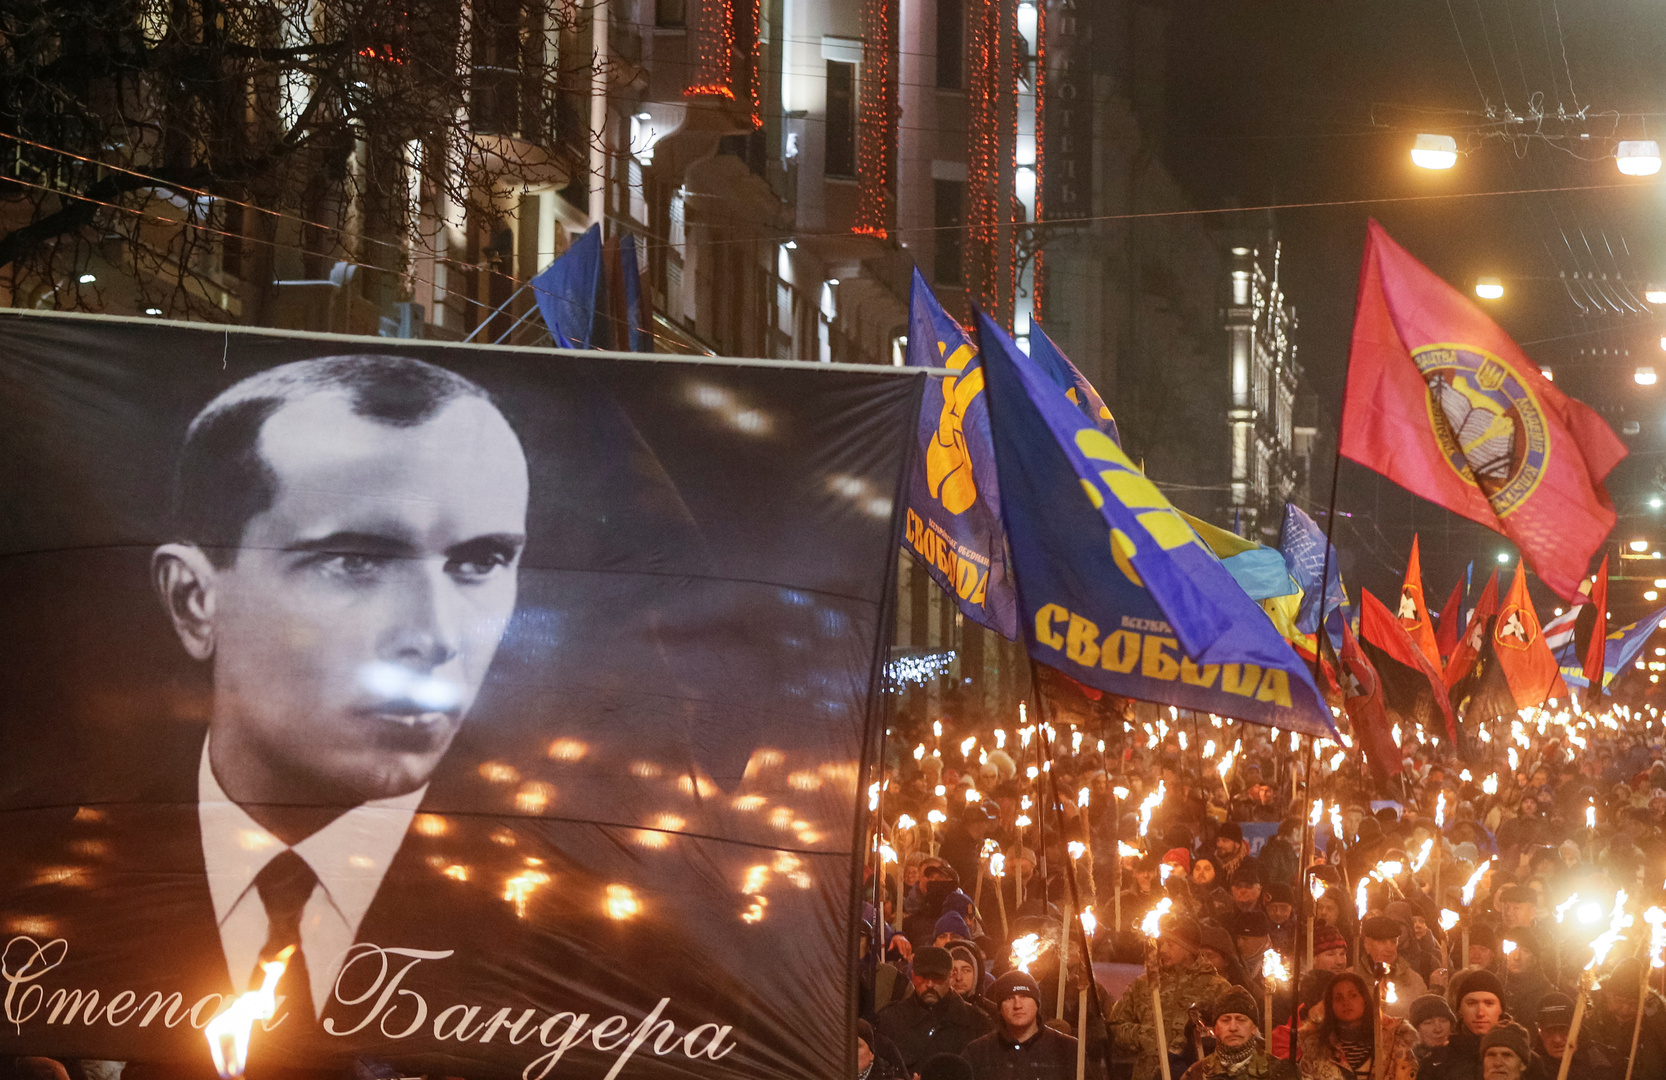 بعد إدانة إسرائيل تكريم زعيم القوميين الأوكرانيين.. كييف تطالبها بعدم التدخل في شؤونها